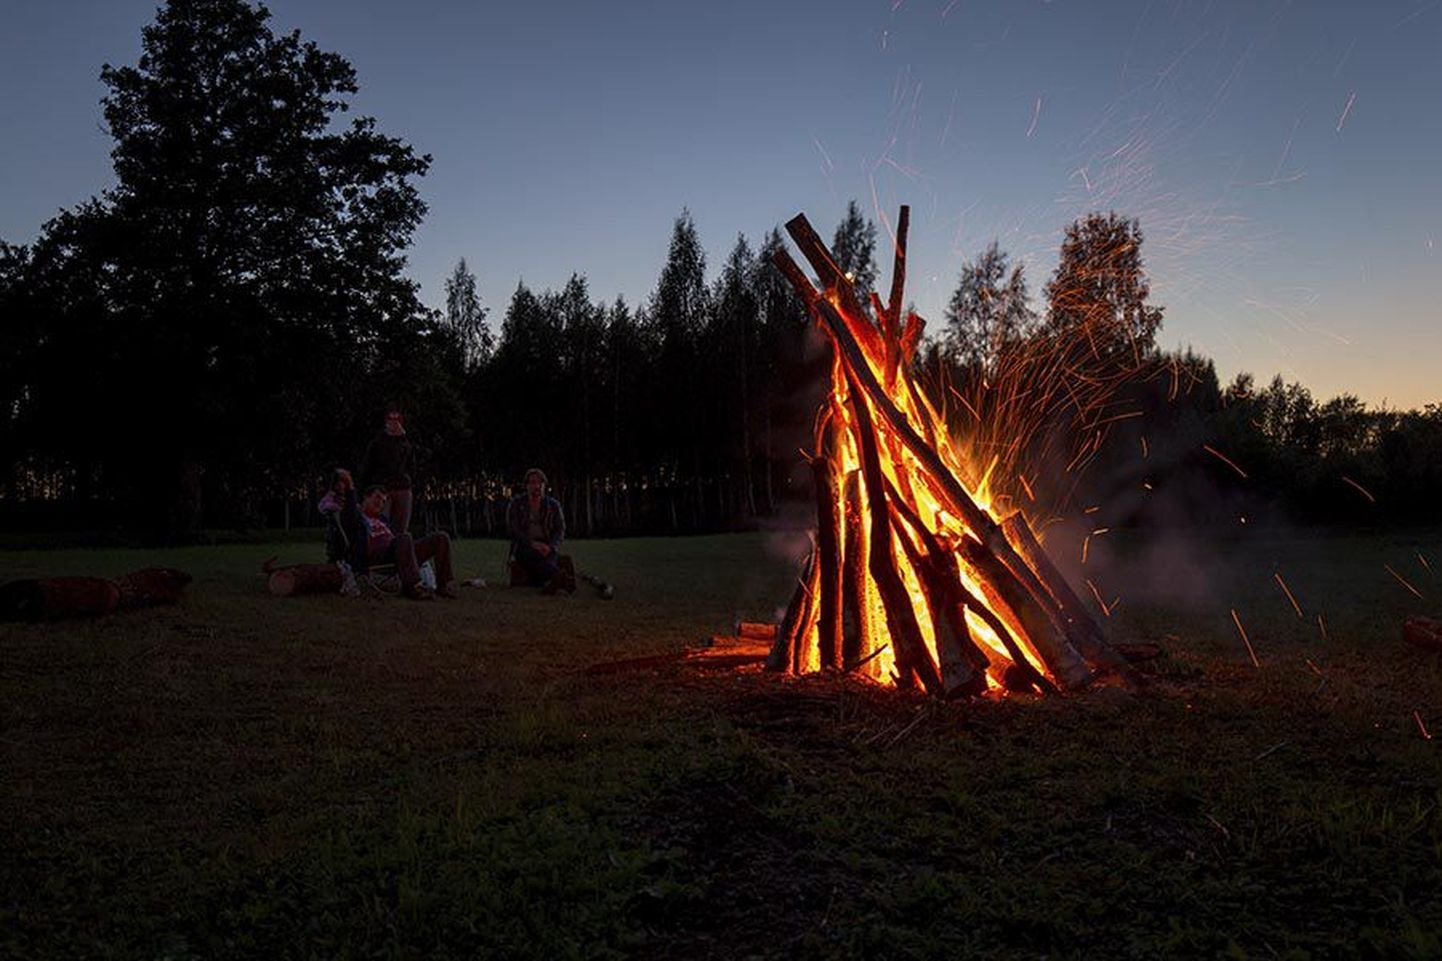 Muinastulede ööd tähistatakse sel nädalavahetusel Viljandimaal mitmes kohas. See ülesvõte on tehtud eelmisel aastal Tarvastu poldril.